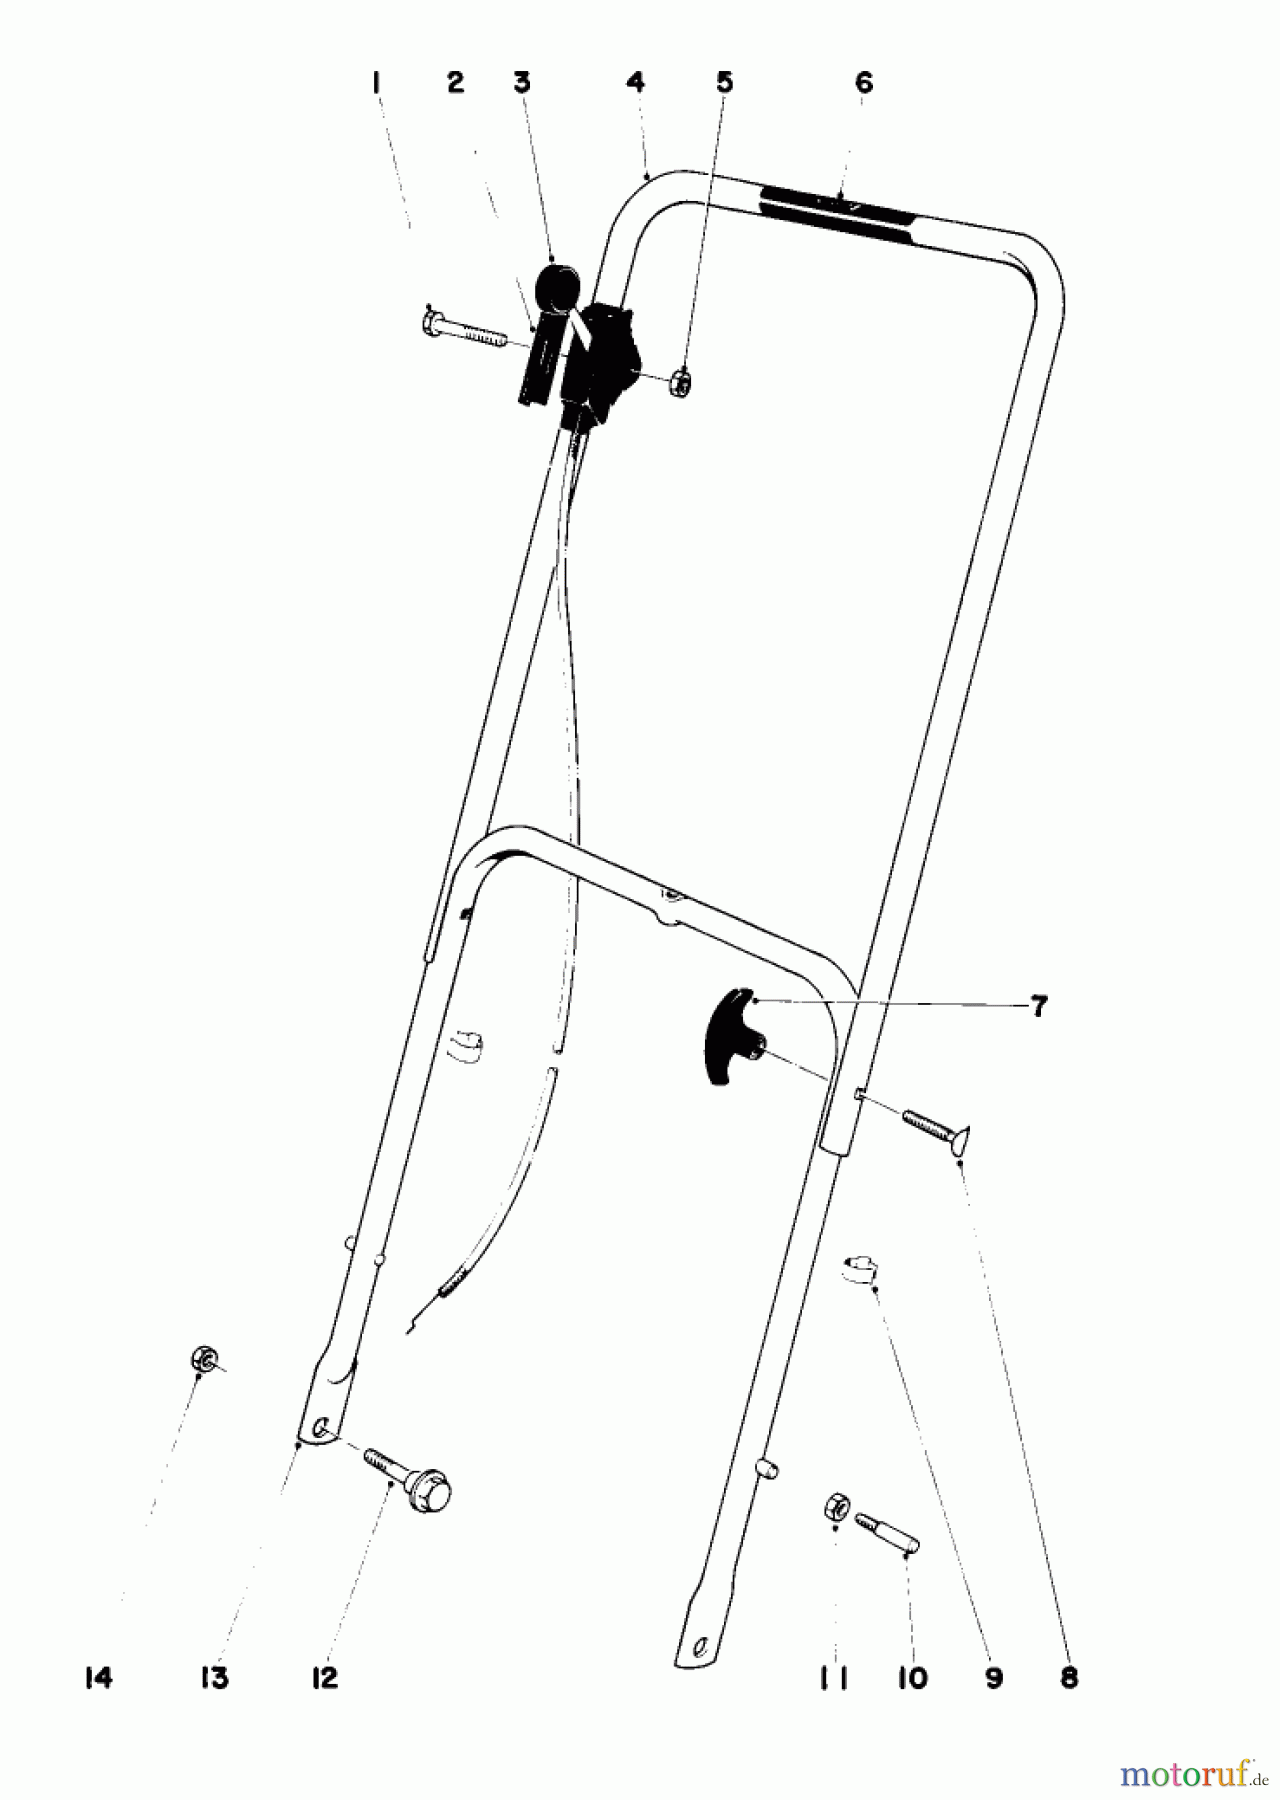  Toro Neu Mowers, Walk-Behind Seite 1 16067 - Toro Whirlwind II Lawnmower, 1979 (9000001-9999999) HANDLE ASSEMBLY MODEL 16067 AND 16155